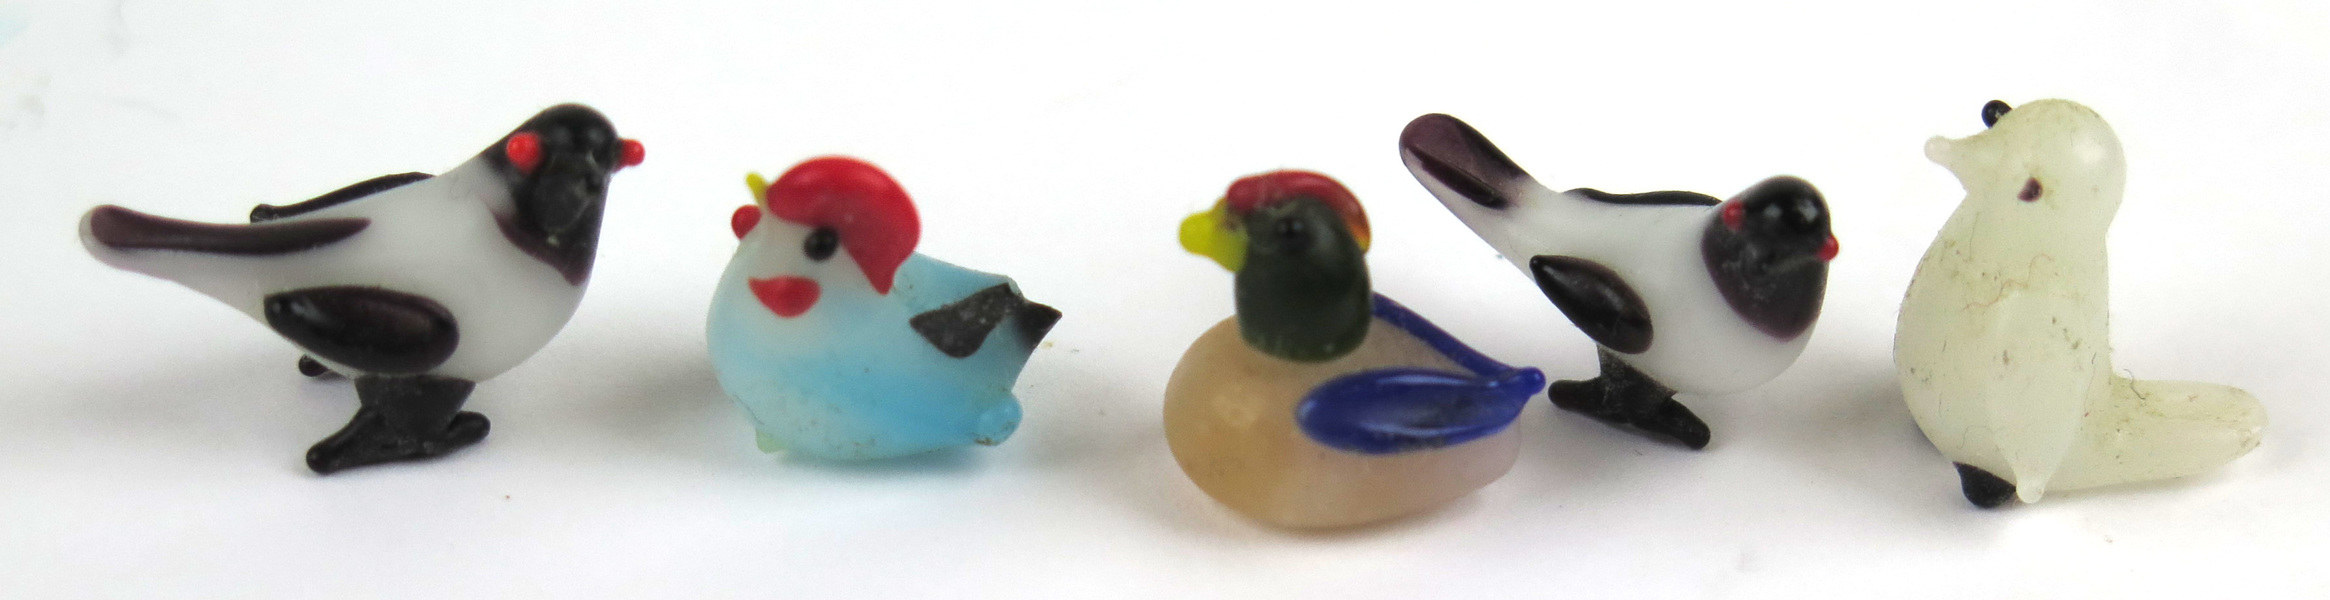 Miniatyrskulpturer, 5 st, polykromt glas, fåglar,_4785a_lg.jpeg